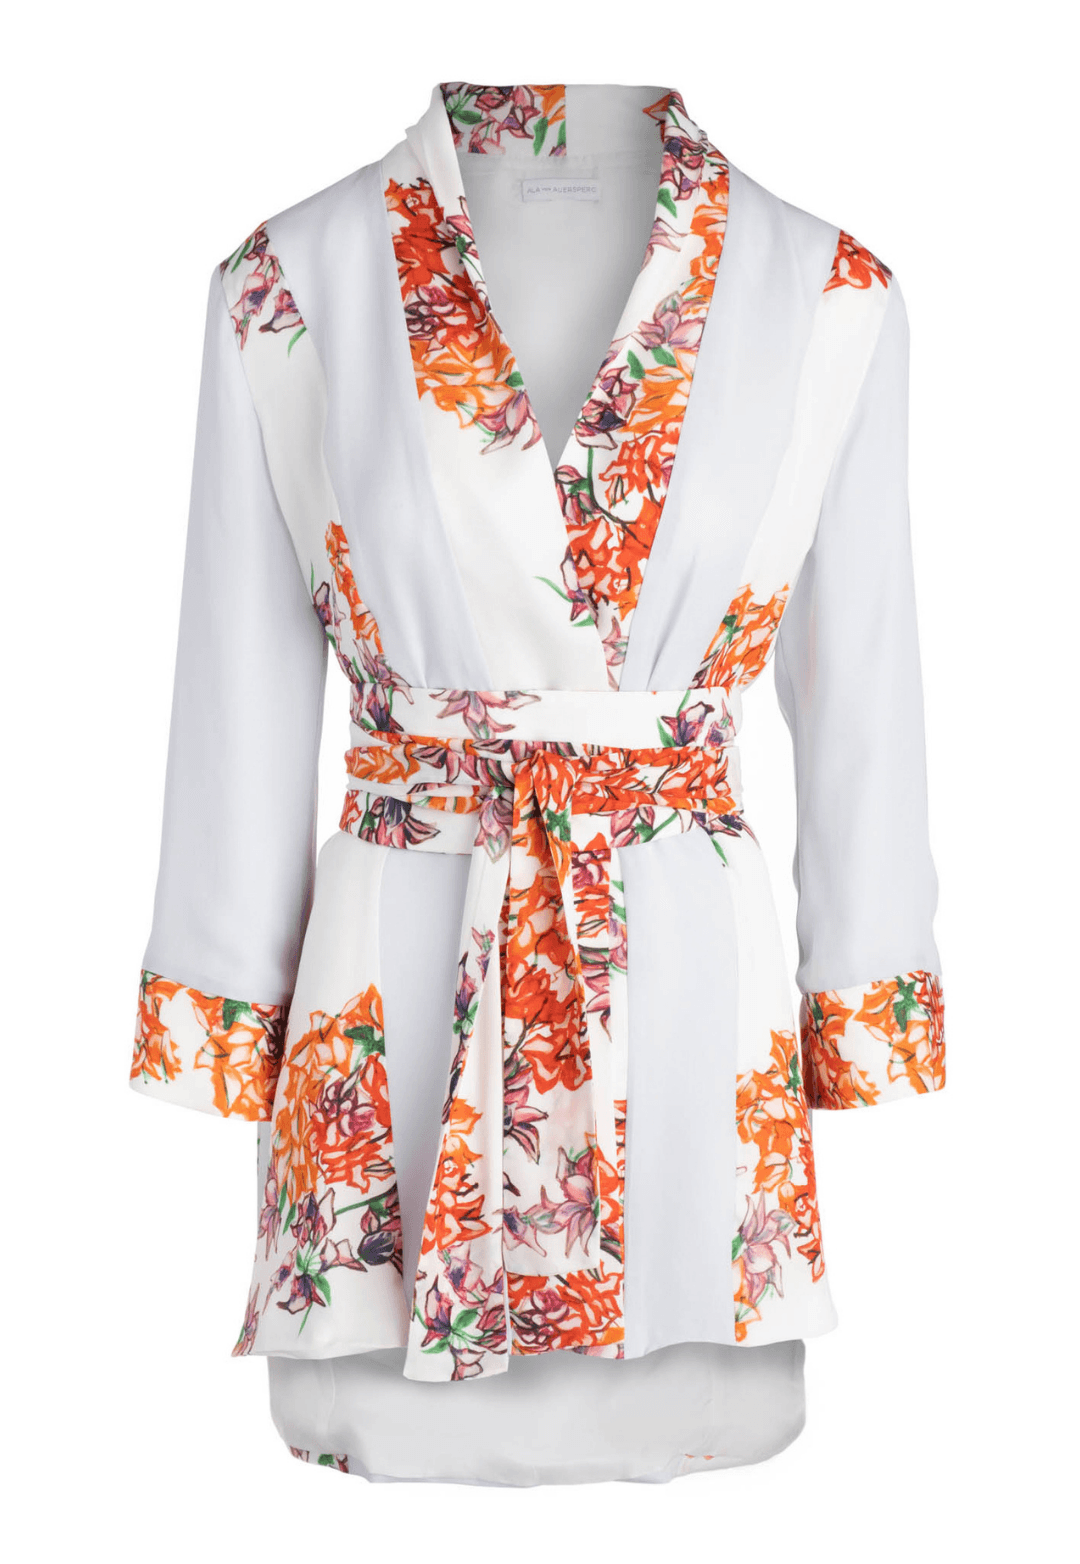 ilk blue paneled orange and white flower printed kimono style jacket with orange and white flower printed belt